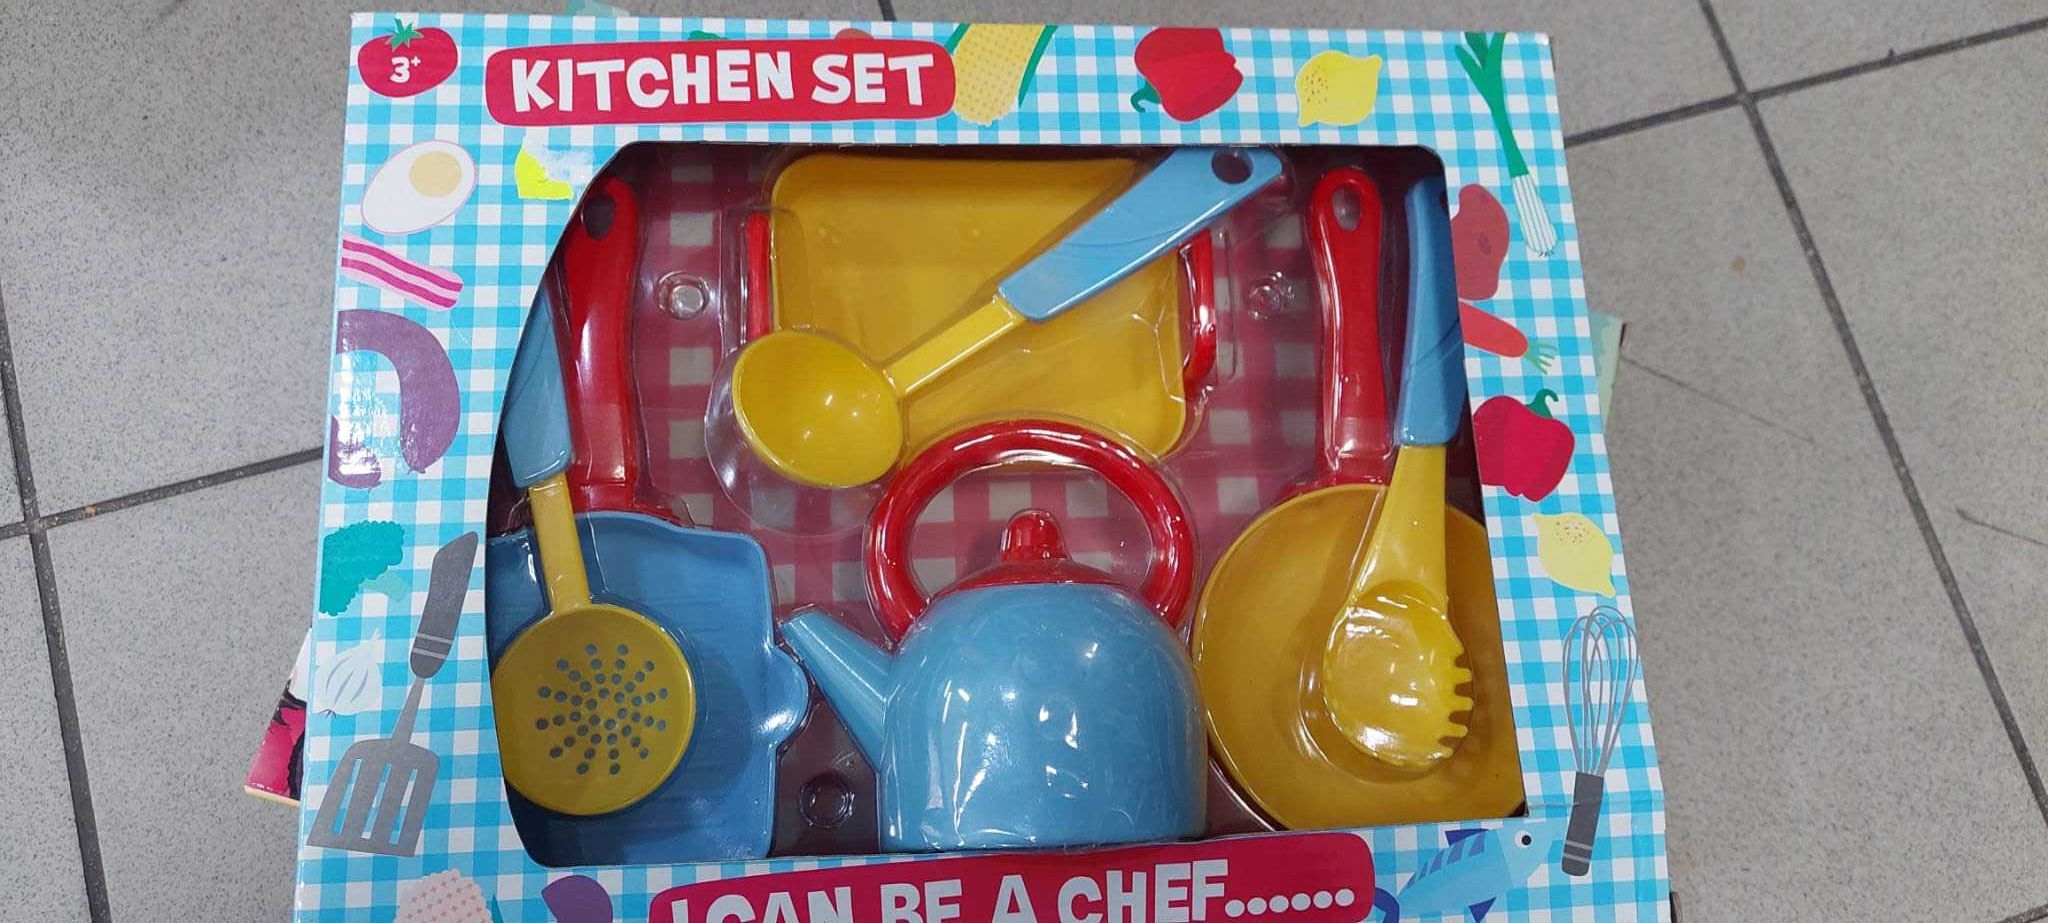 Zabawka zestaw kuchenny wiek 3+ U TIGERA SKLEP